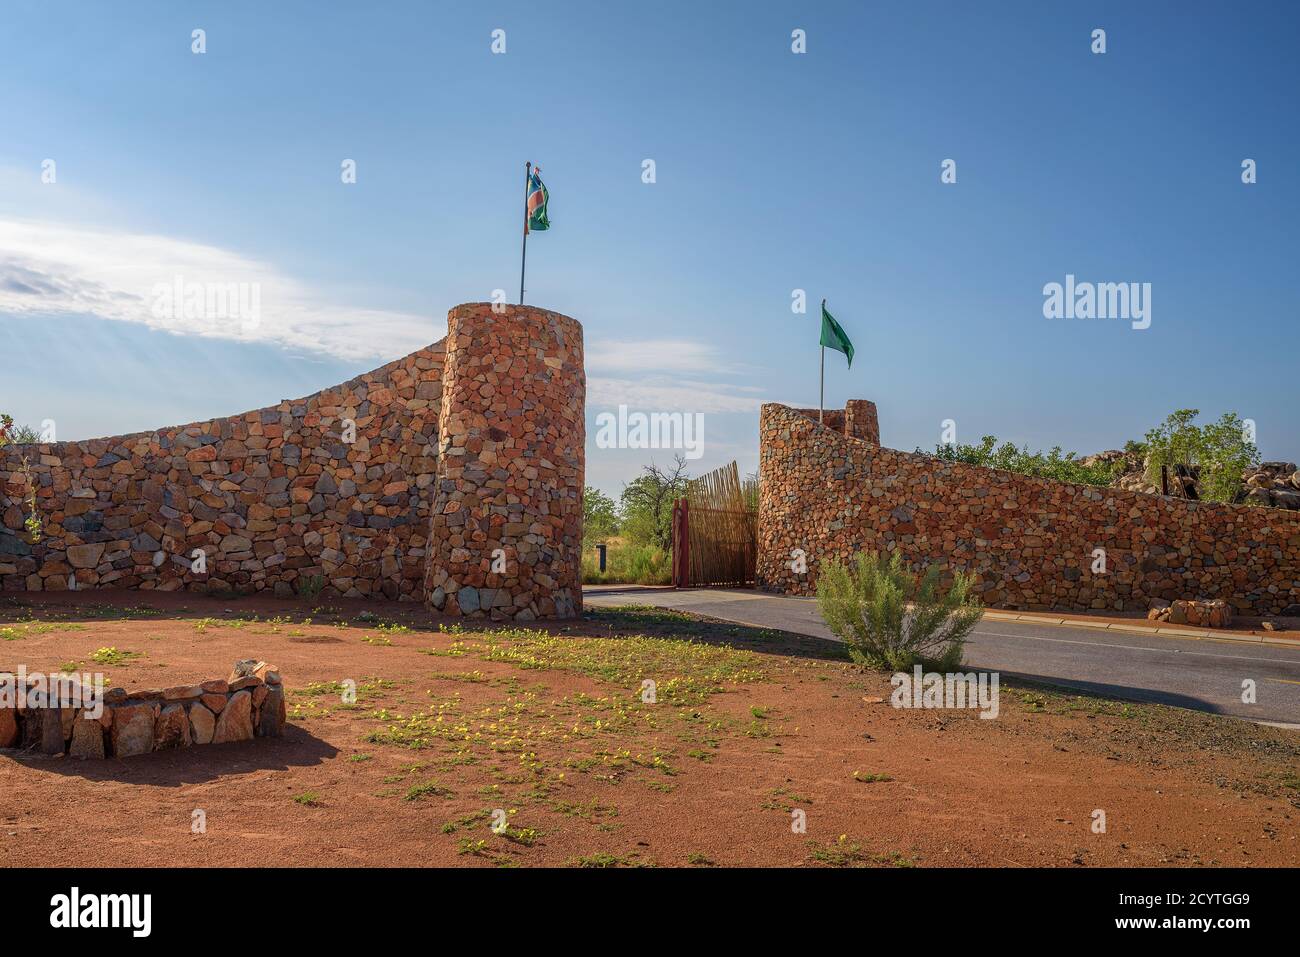 Galton Gate to Etosha National Park in Namibia, south Africa Stock Photo